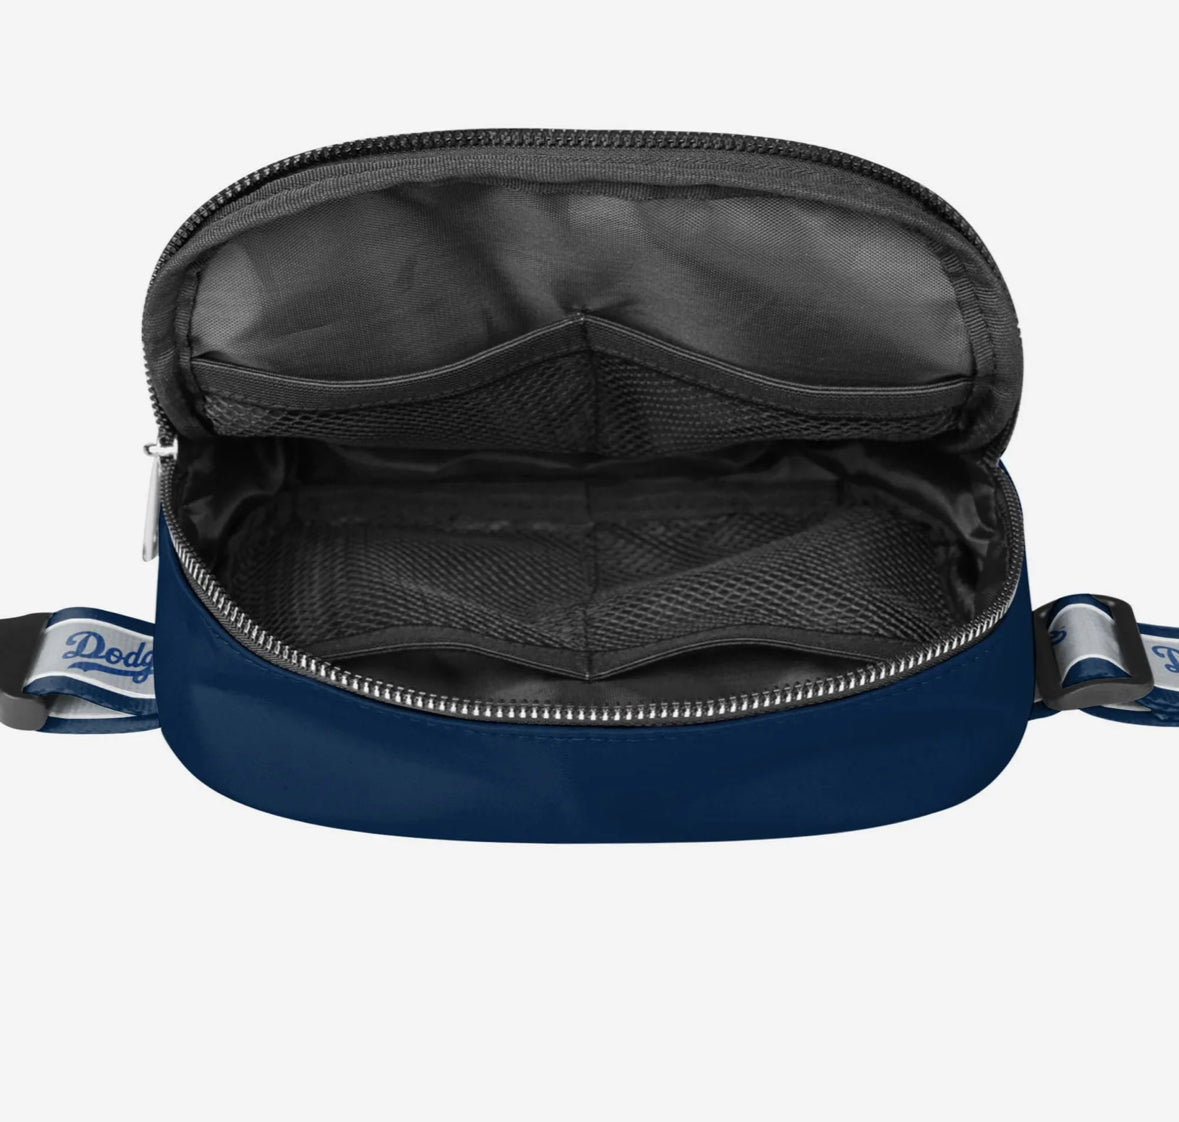 Dodgers NFL Unisex-Adult NFL Team Color Crossbody Belt Bag